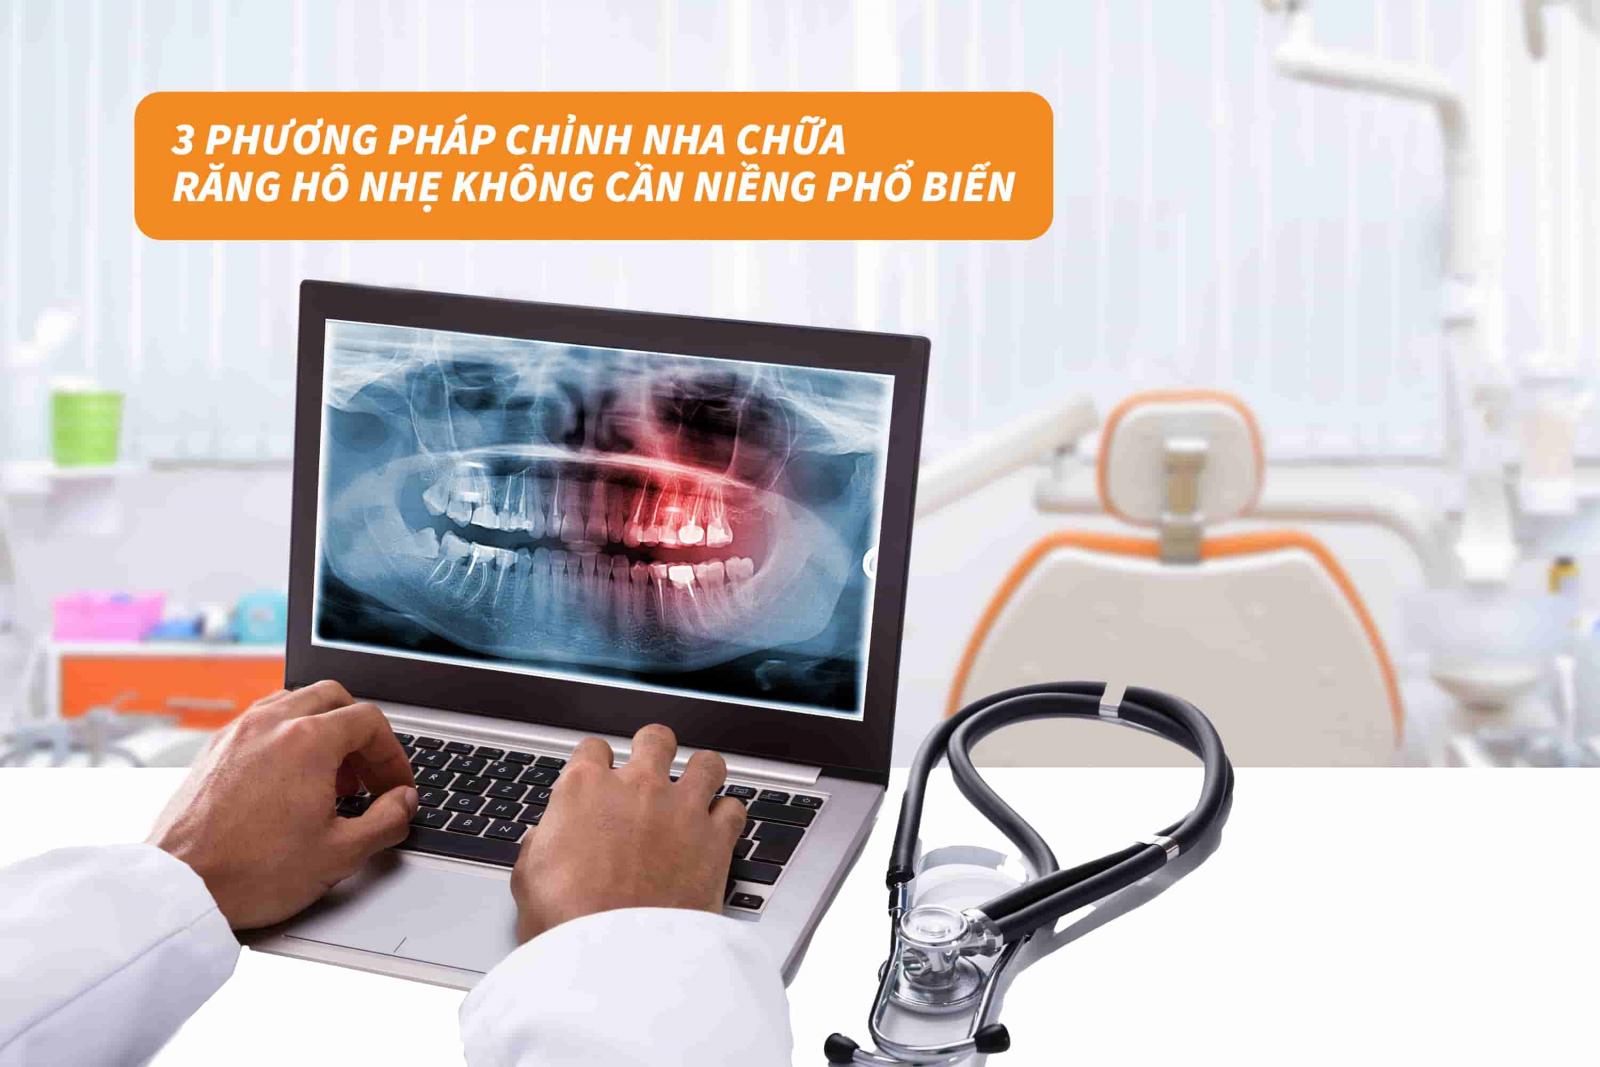 03 phương pháp chỉnh nha chữa răng hô nhẹ không cần niềng phổ biến